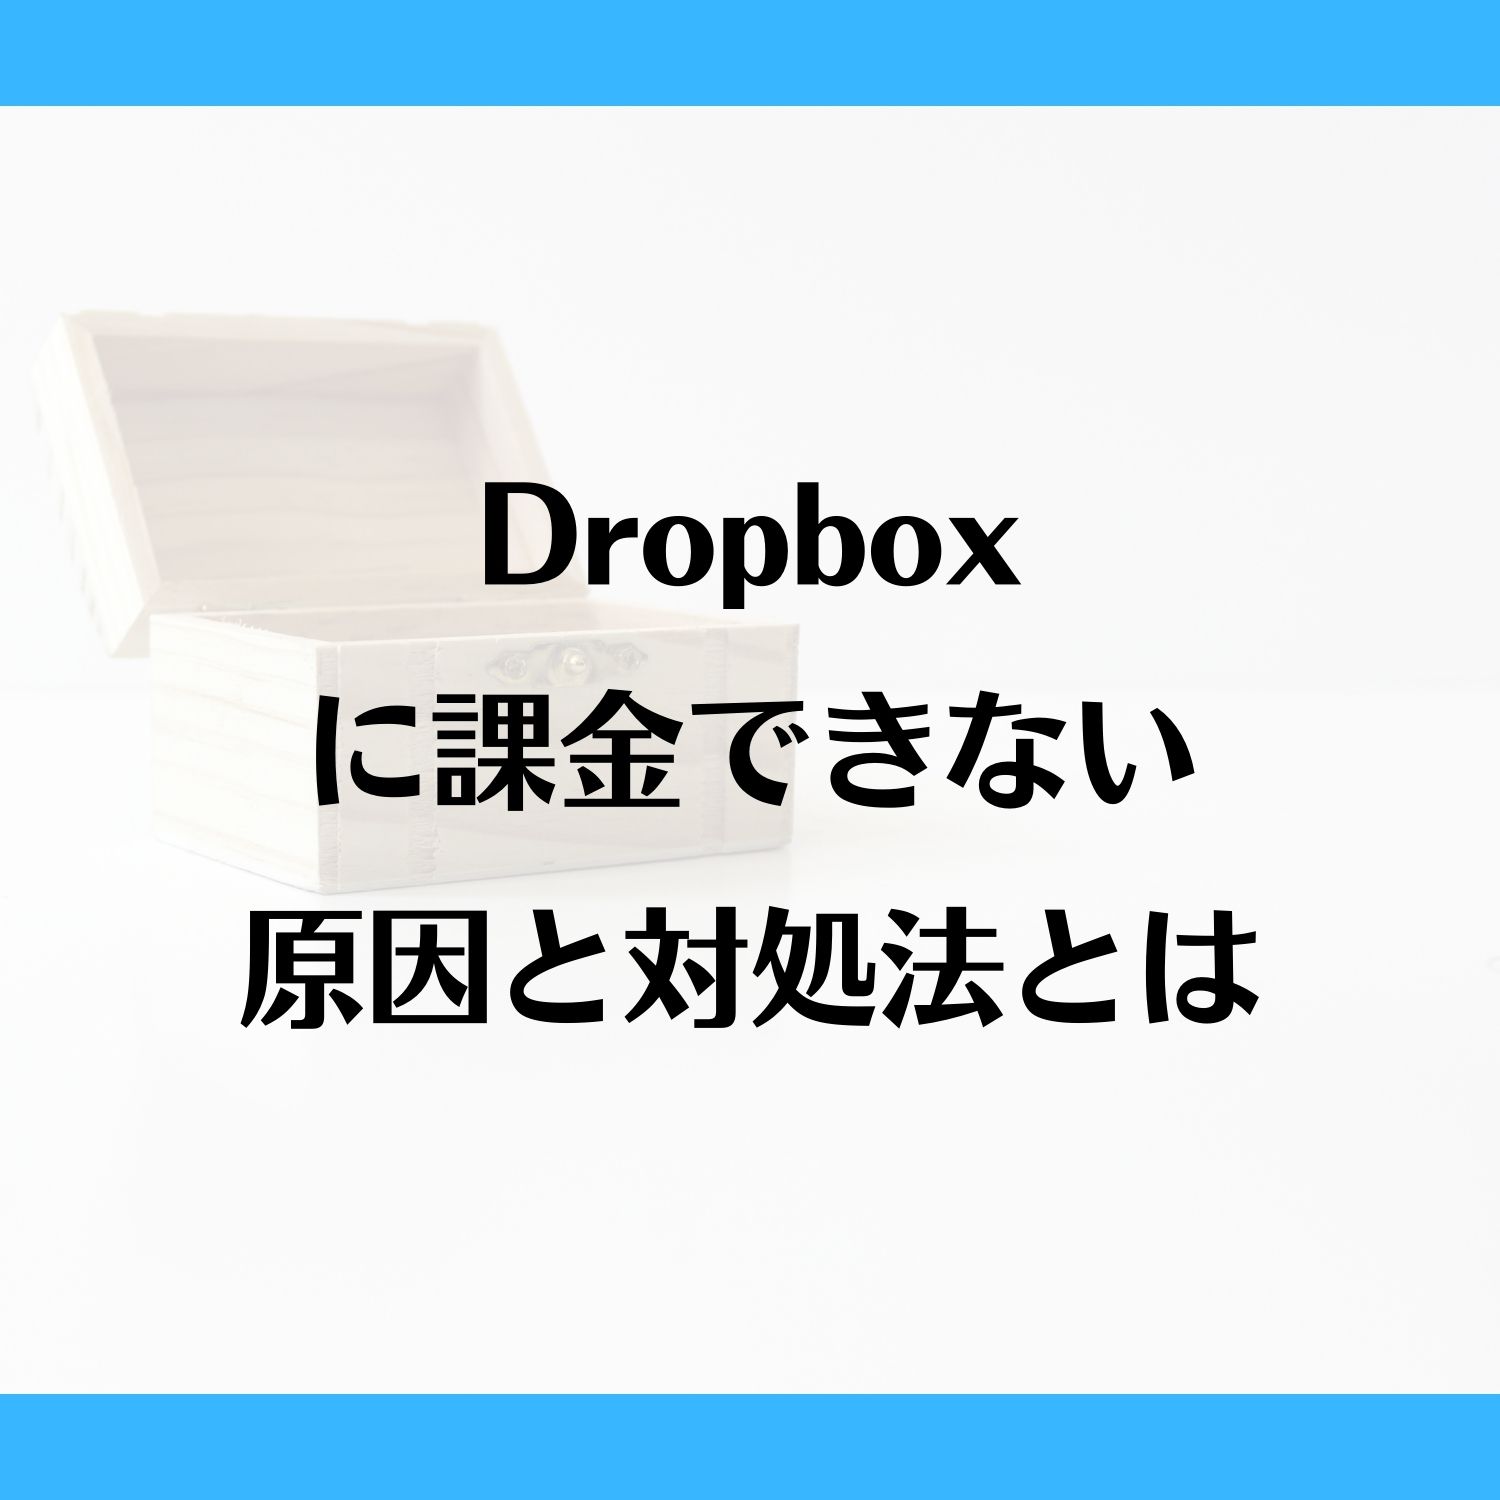 Dropboxに課金できない原因と対処法とは #Dropbox